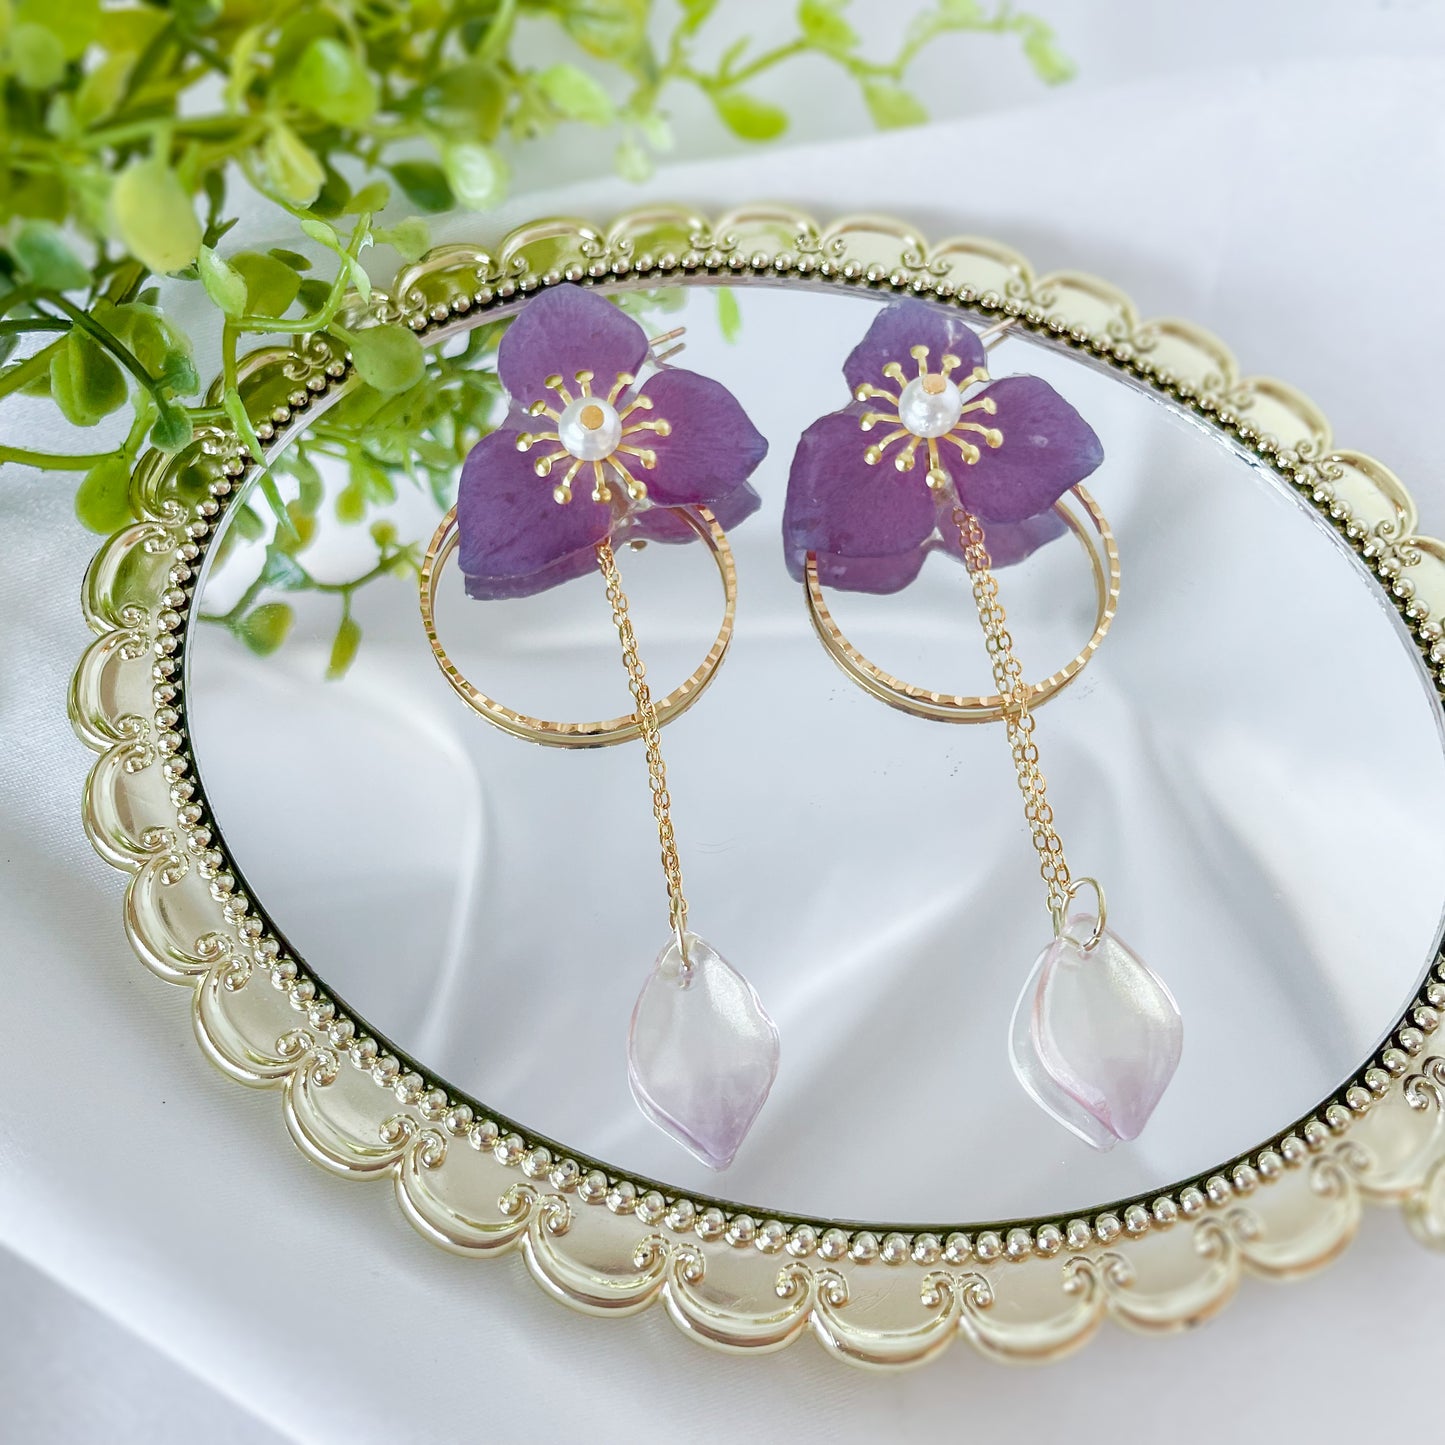 Hydrangea earrings